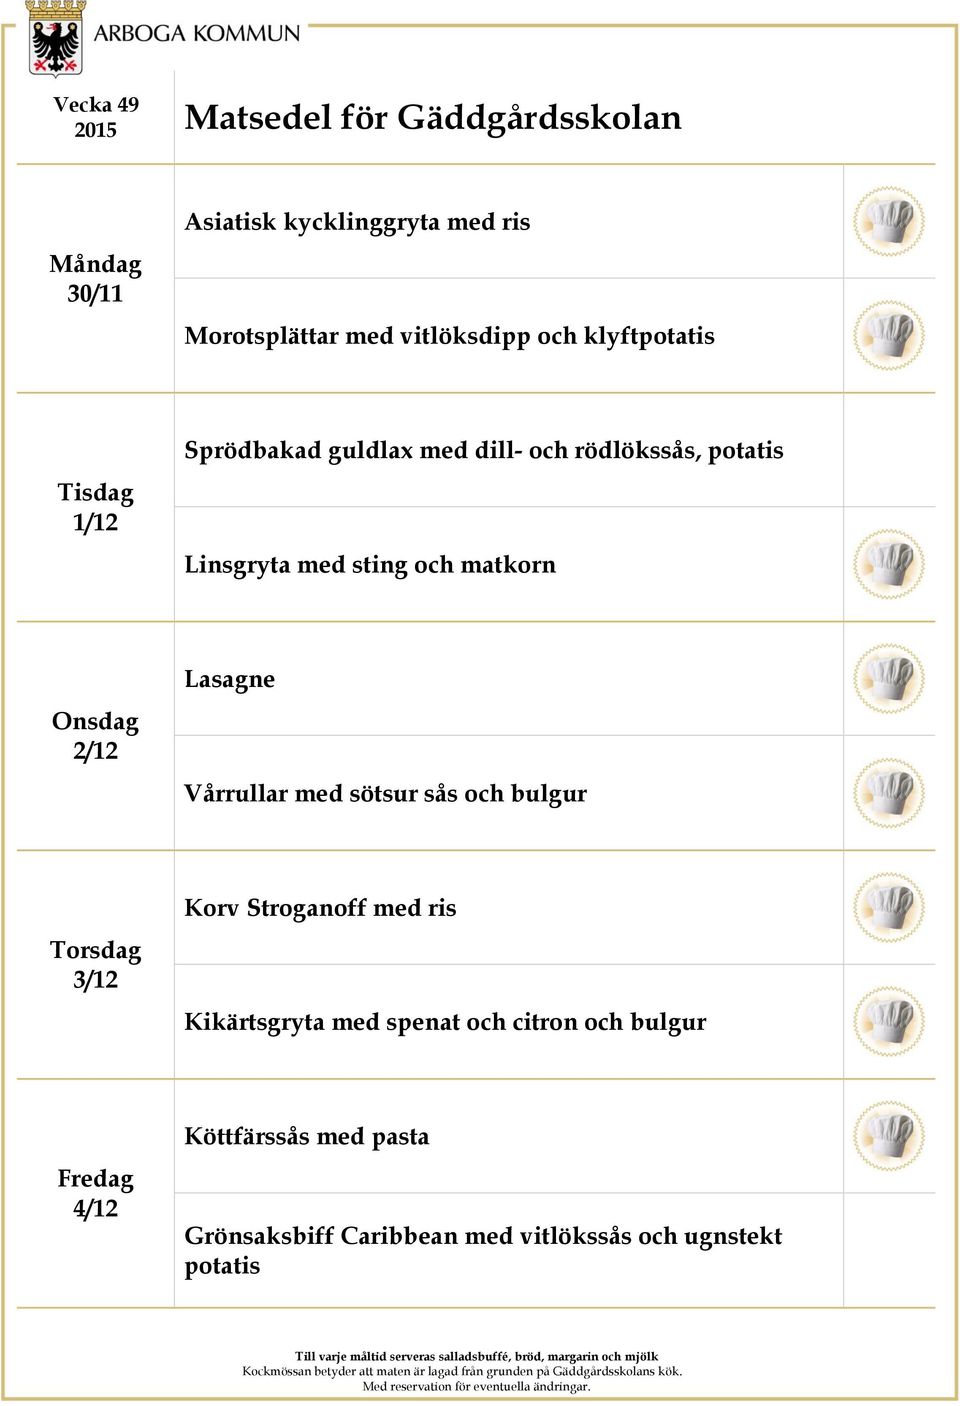 Vårrullar med sötsur sås och bulgur 3/12 Korv Stroganoff med ris Kikärtsgryta med spenat och